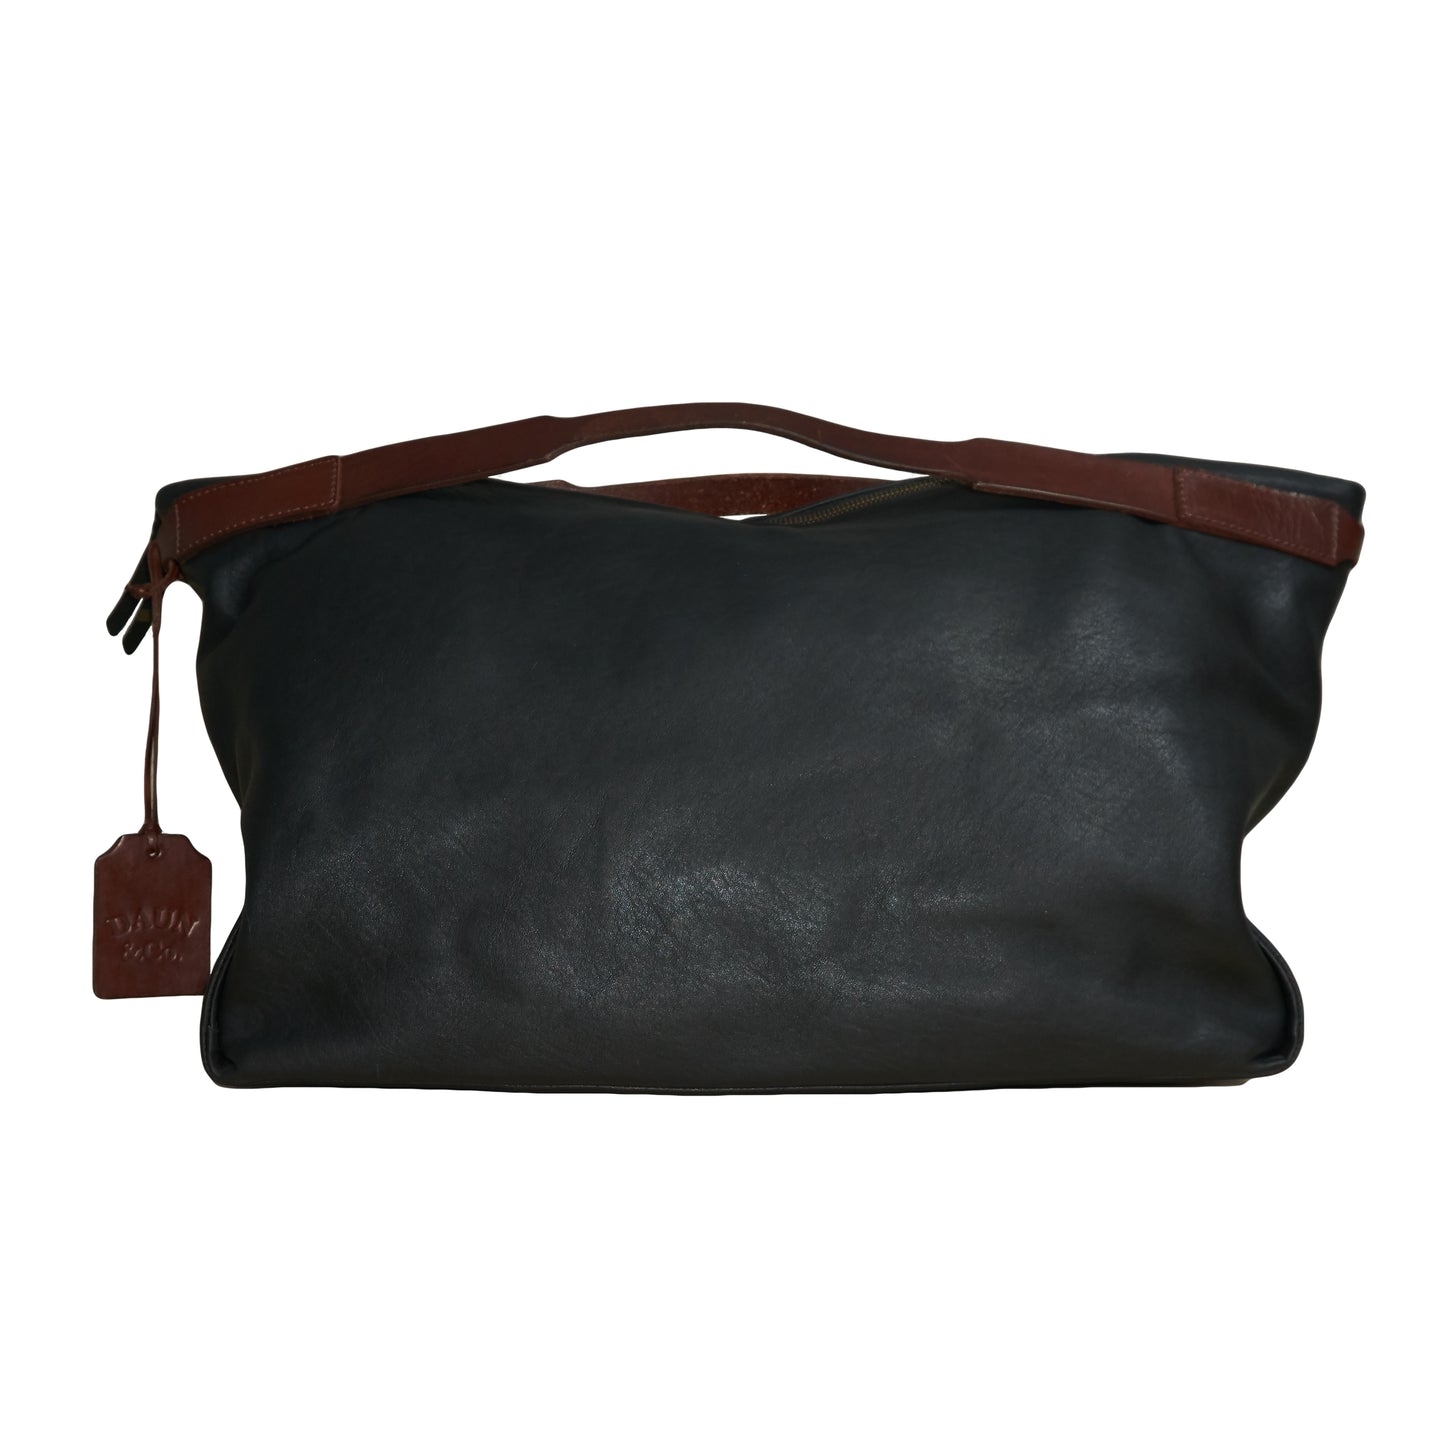 AGUNG WEEKENDER BAG - Genuine Cow Leather | Black & Rusty Brown